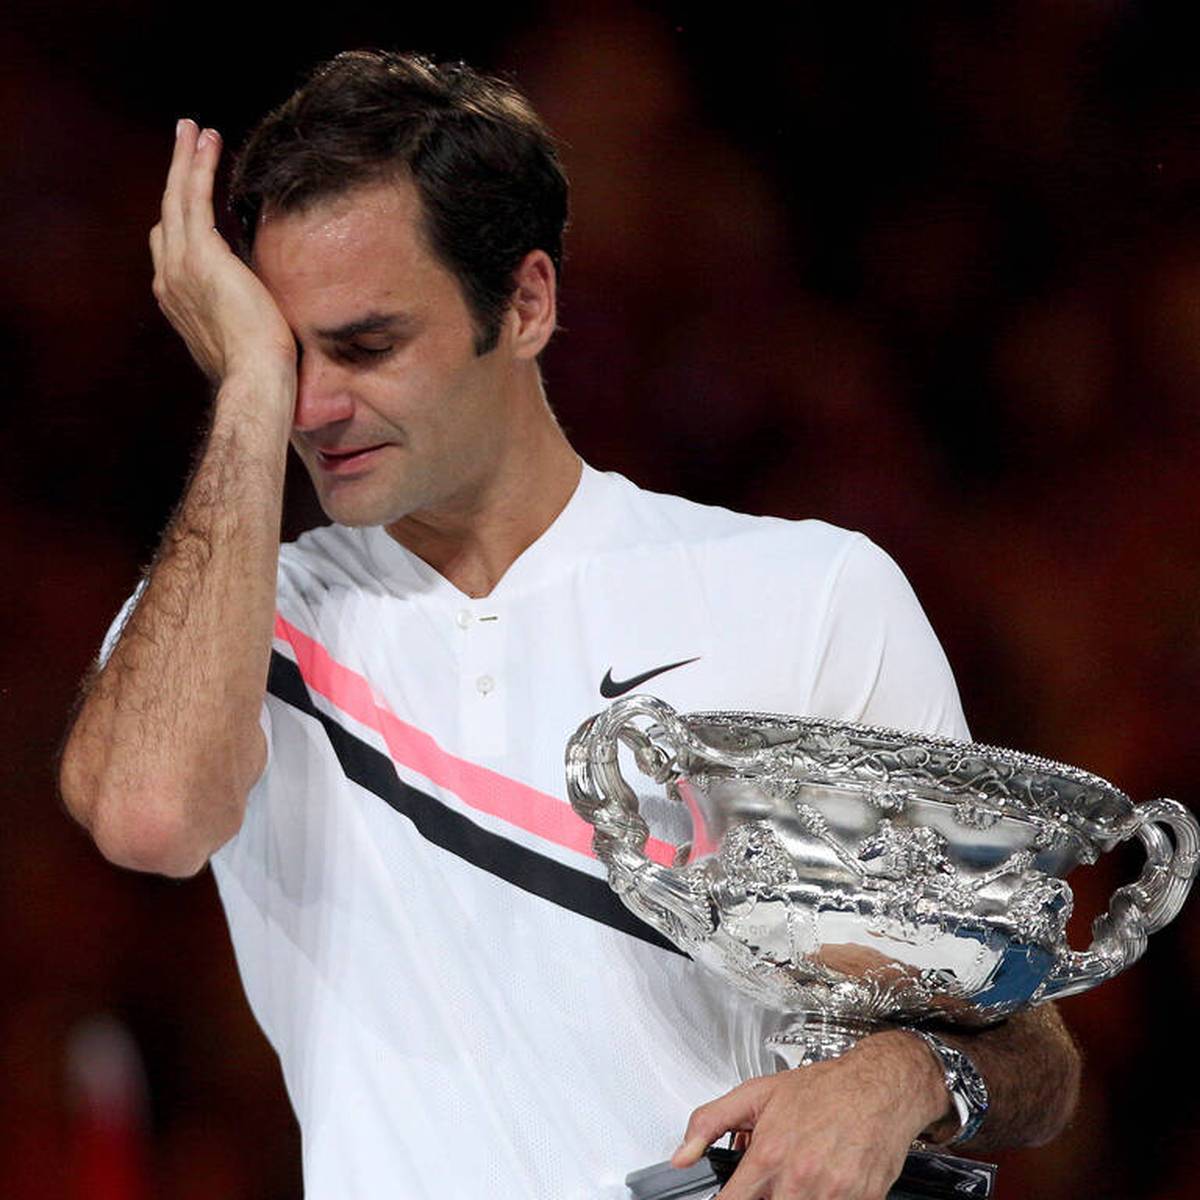 Roger Federer wird seine ruhmreiche Tennis-Karriere beenden. Nach seiner Rücktrittsverkündung zollen zahlreiche Weggefährten dem Schweizer Respekt. Darunter sind viele große Namen wie Lionel Messi, Serena Williams und Rod Laver.